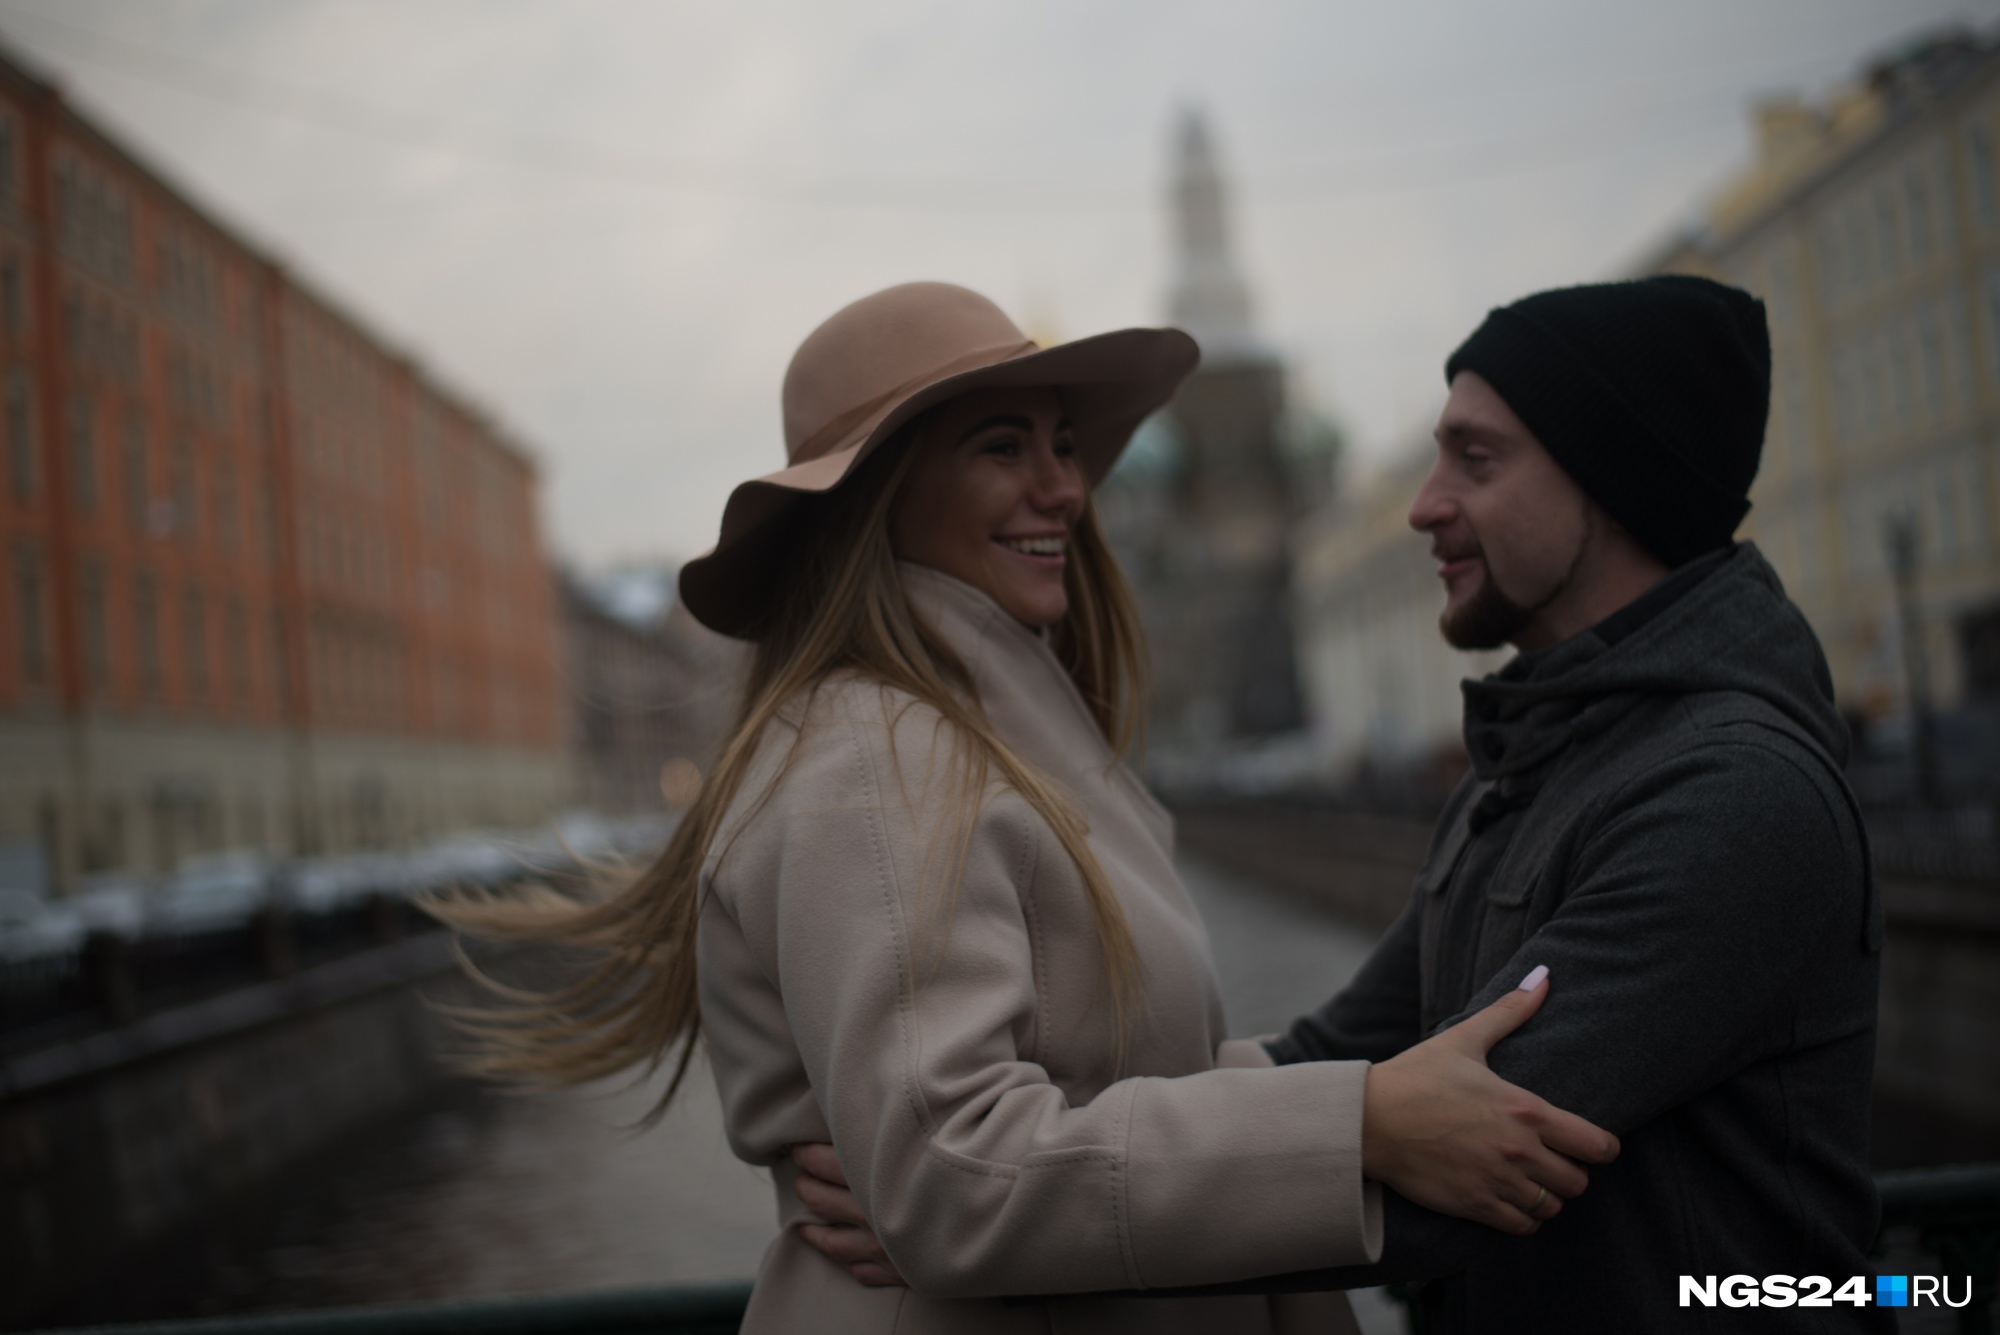 Мария с мужем Святославом переезжали в Санкт-Петербург в октябре 2017 года